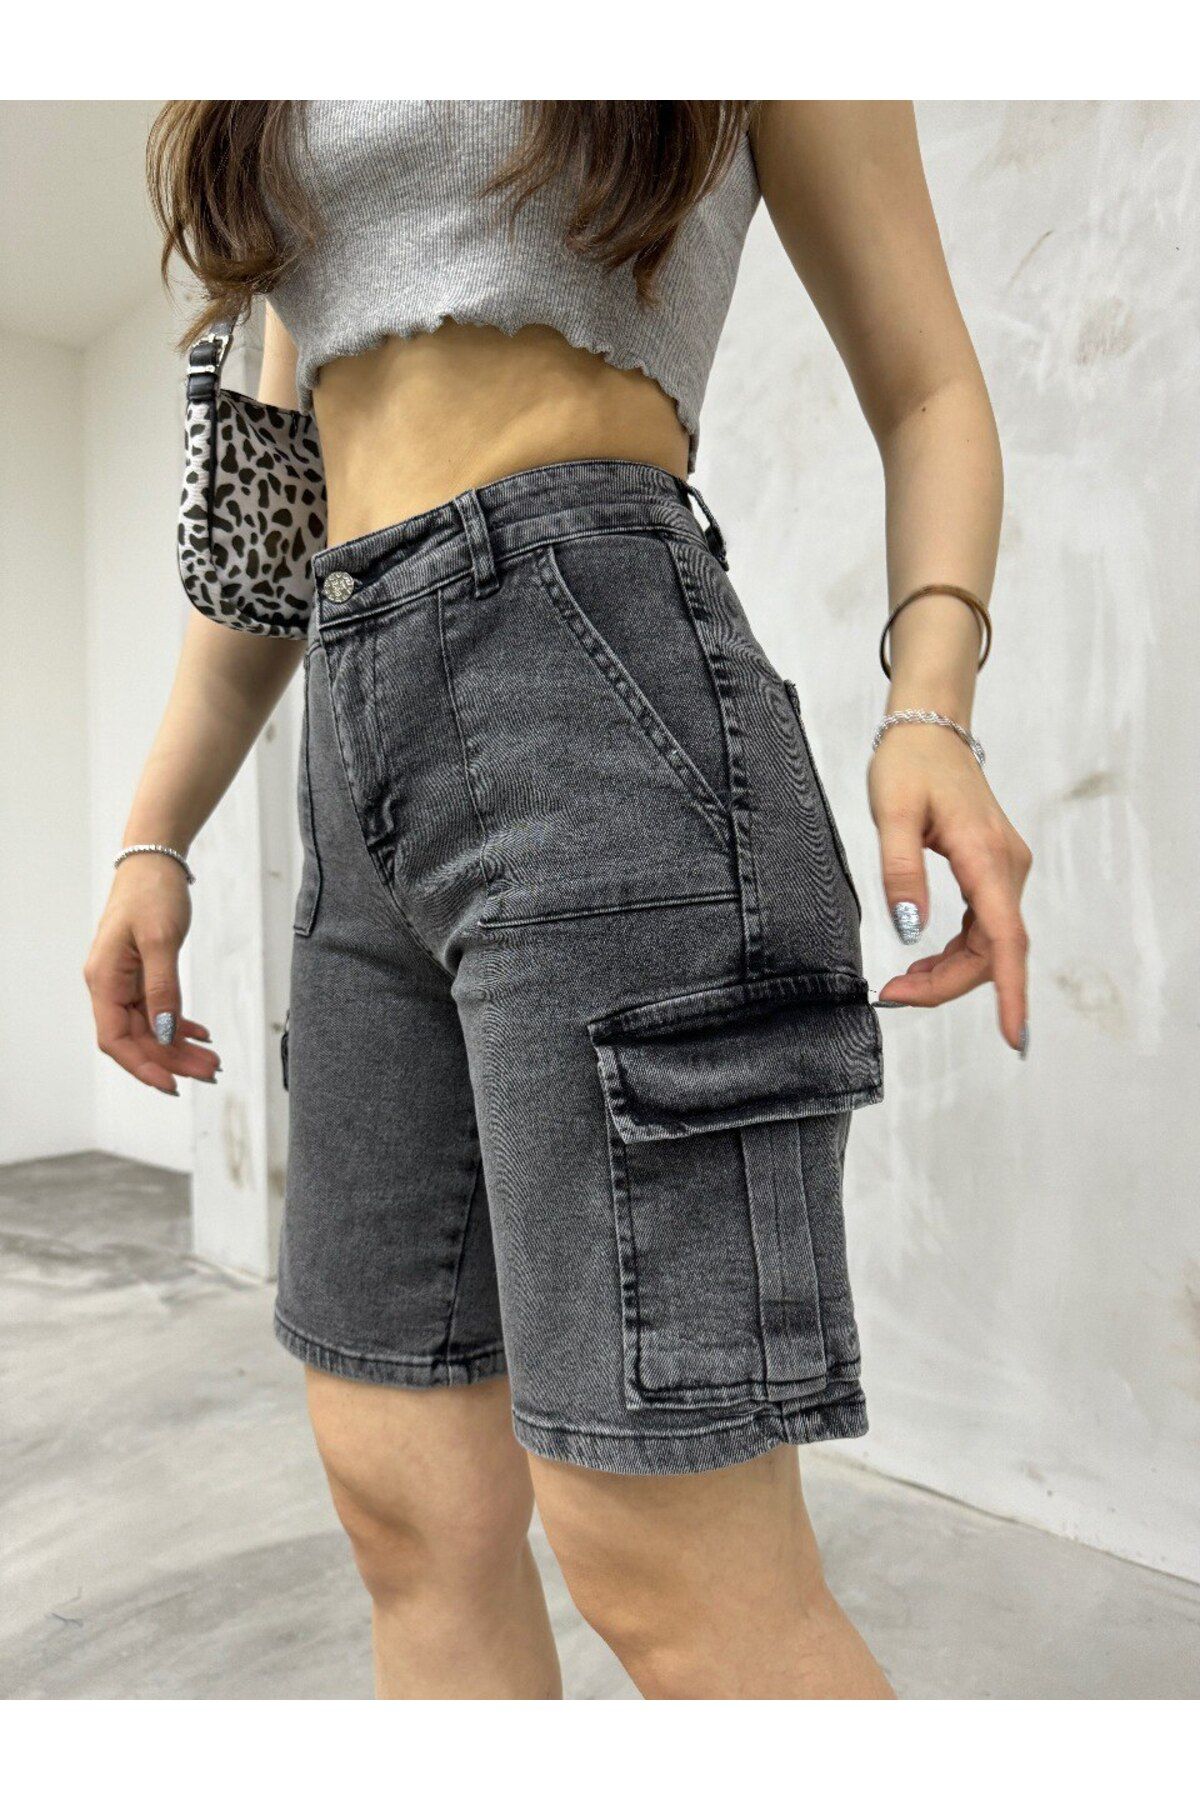 BİKELİFE Kadın Füme Kargo Cepli Yüksek Bel Esnek Bermuda Şort Jeans